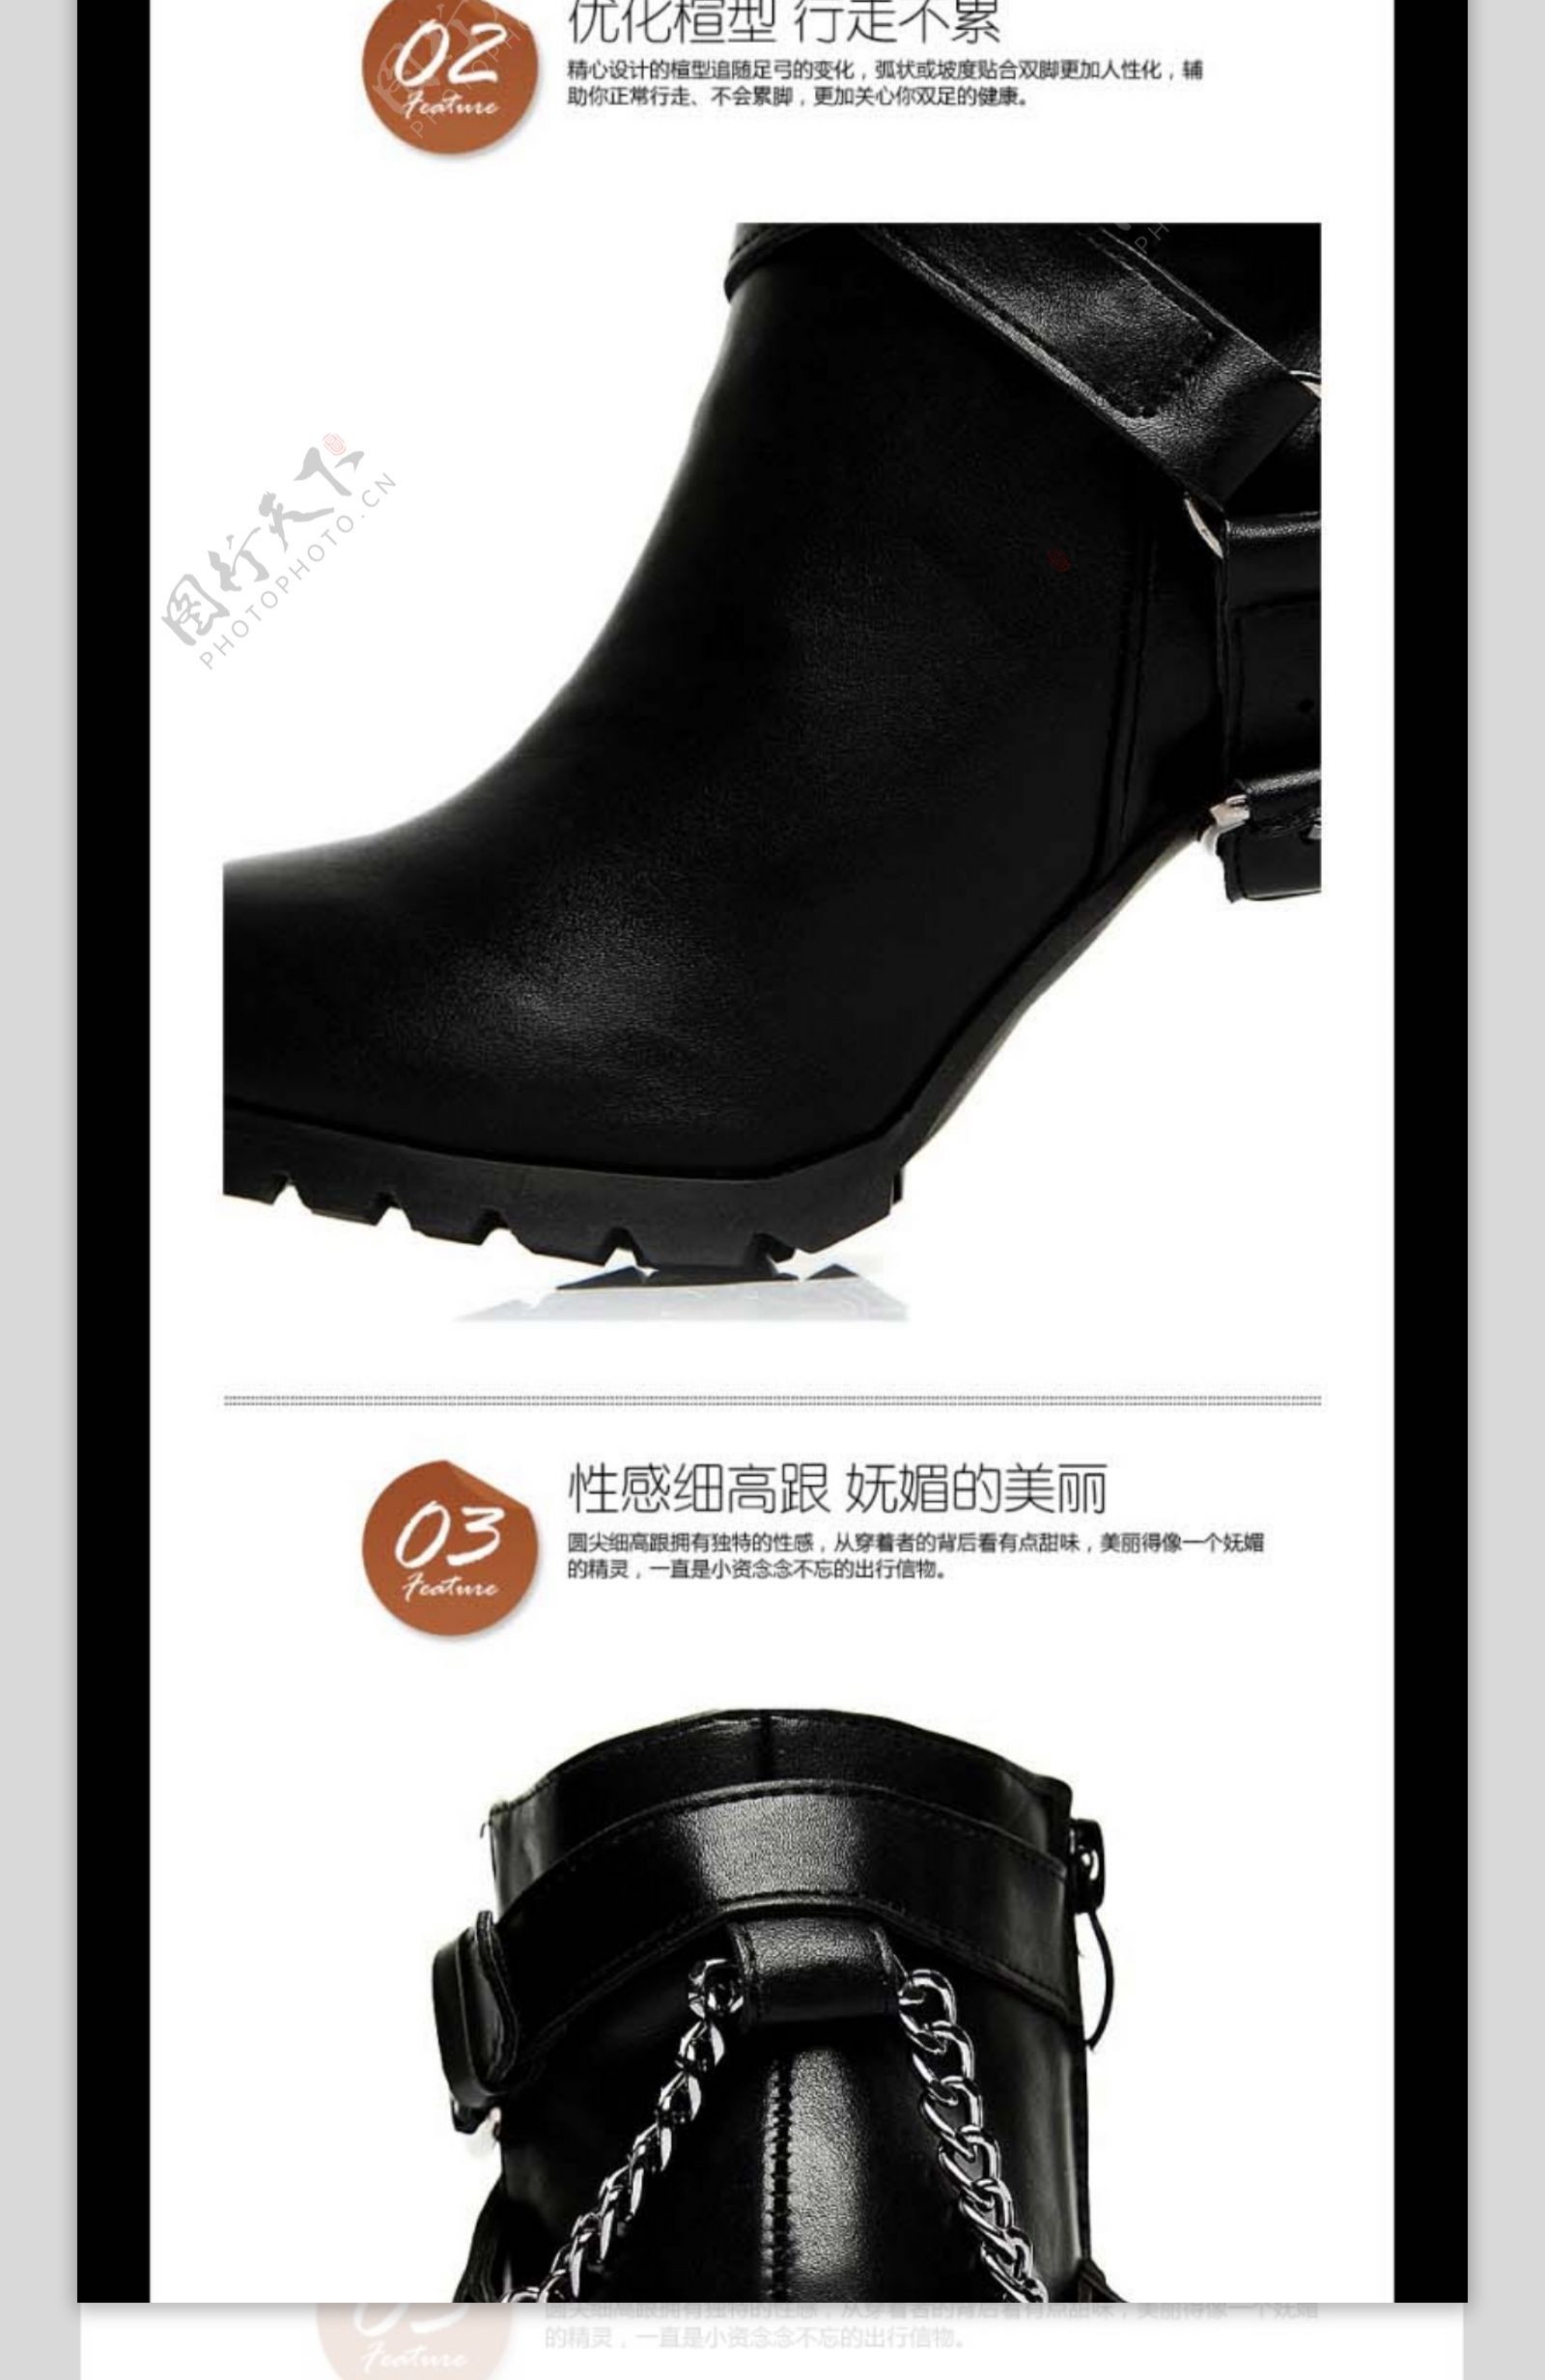 黑色矮靴女鞋详情页PSD素材下载